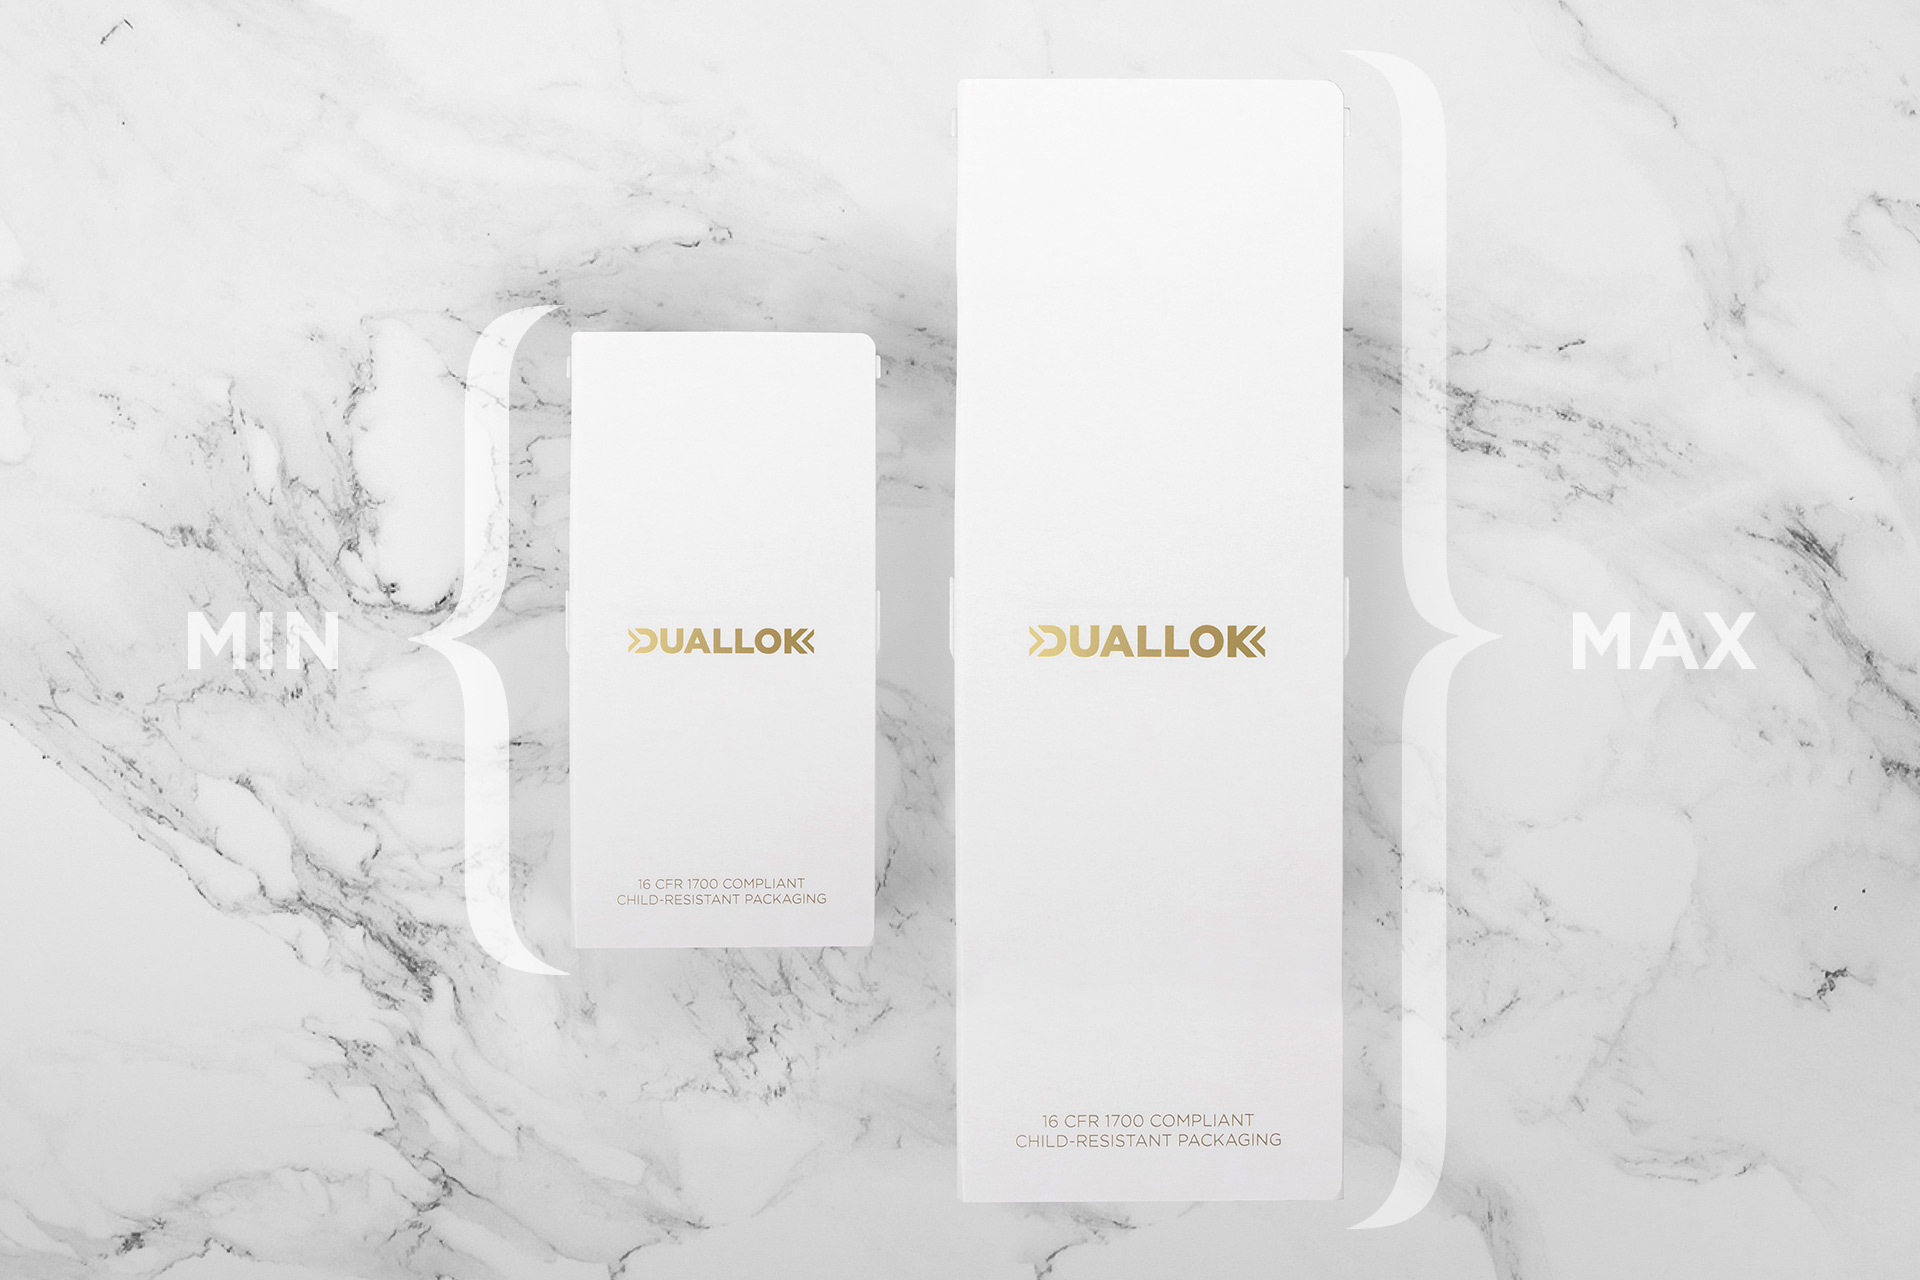 Duallok packaging